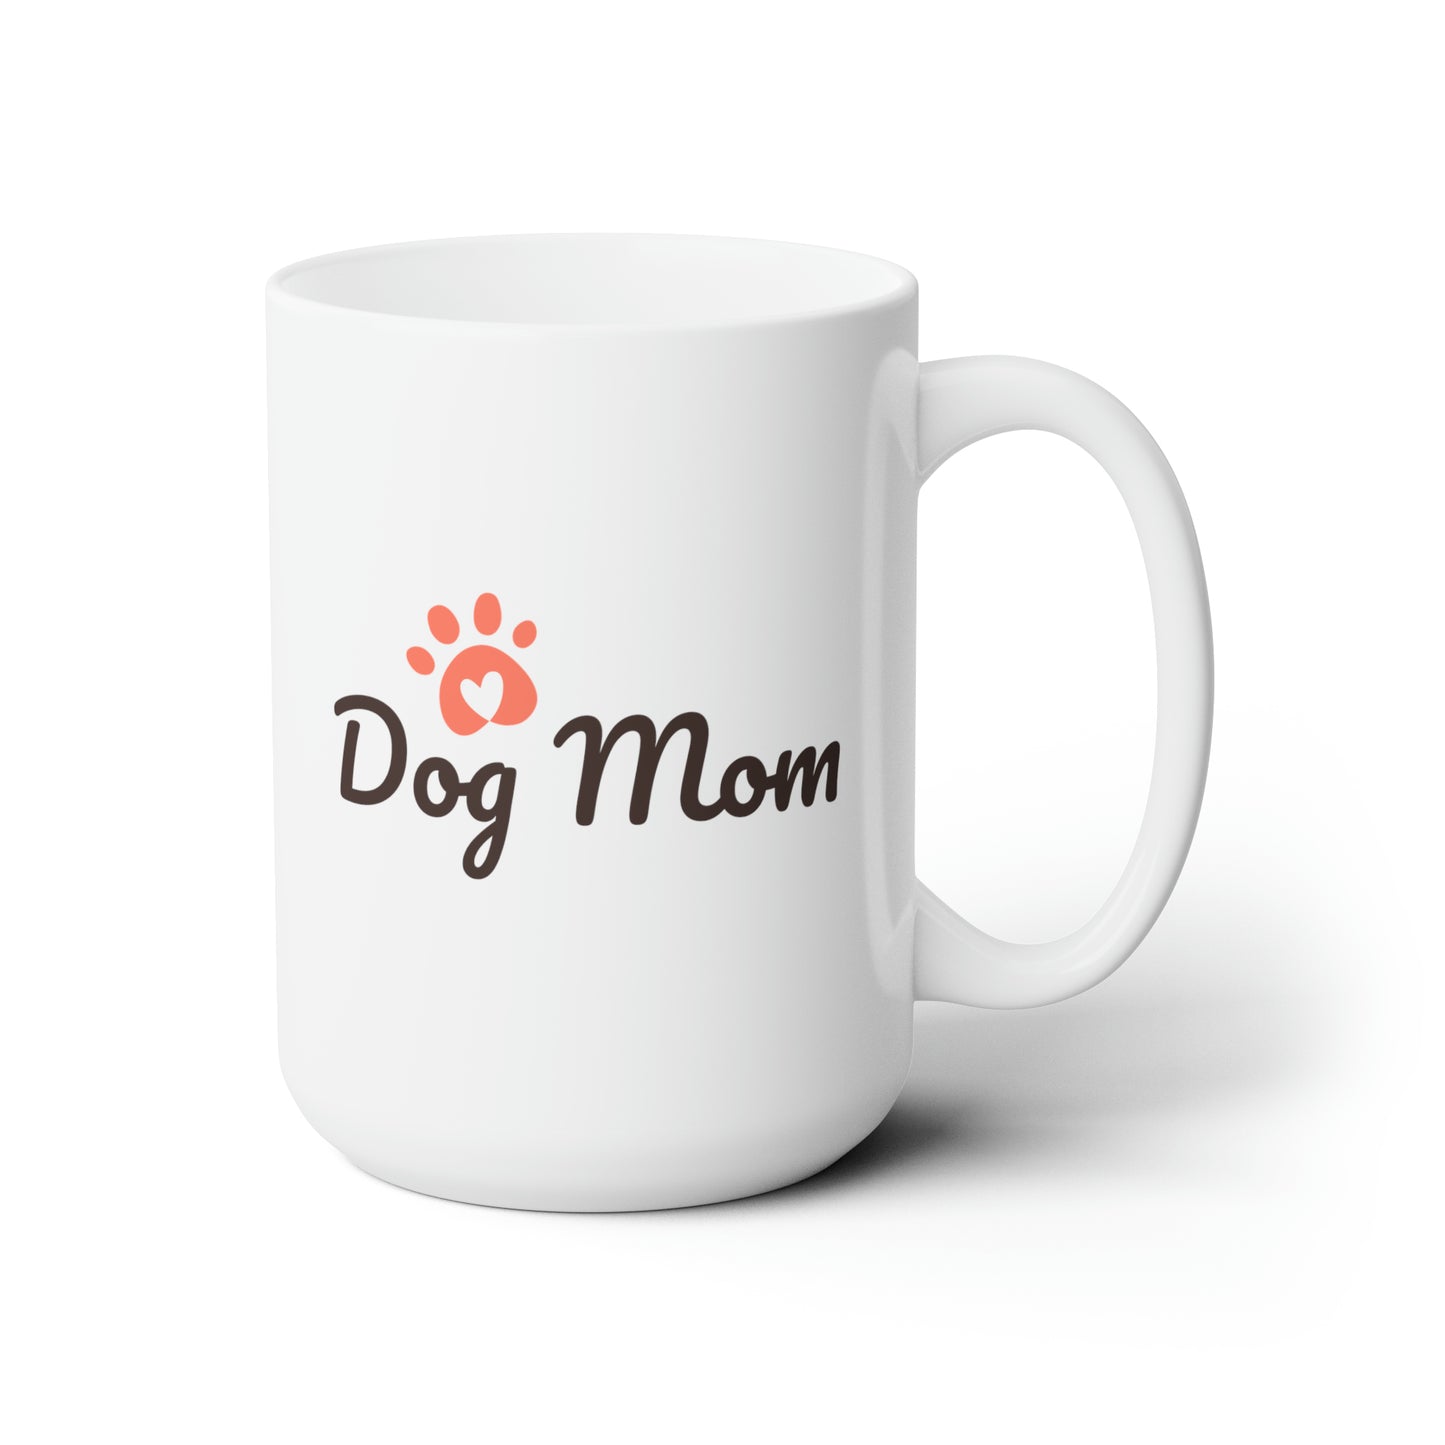 "Dog Mom" Graphic Design Ceramic Mug 15oz